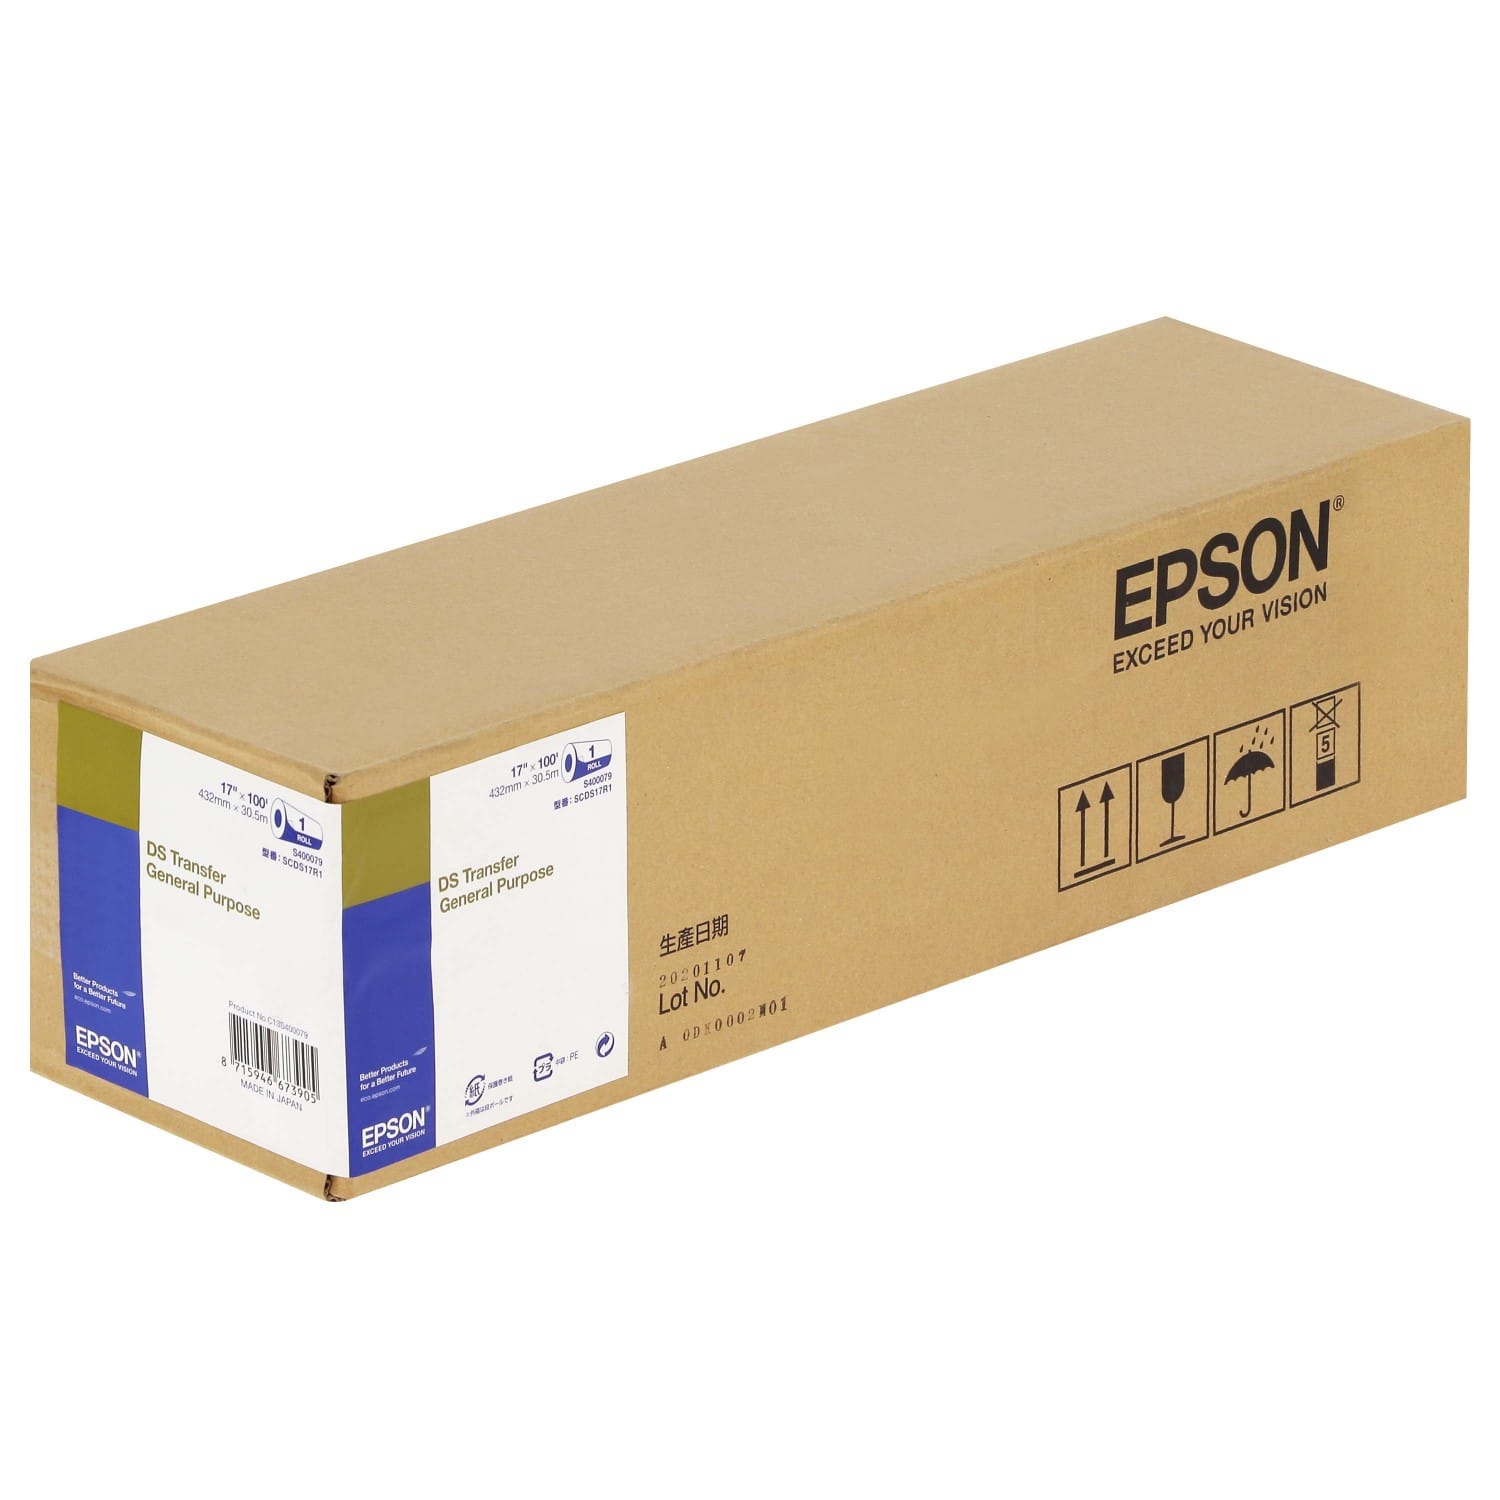 Rouleau de 250 etiq. papier brillant EPSON 76mmx127mm imprimante